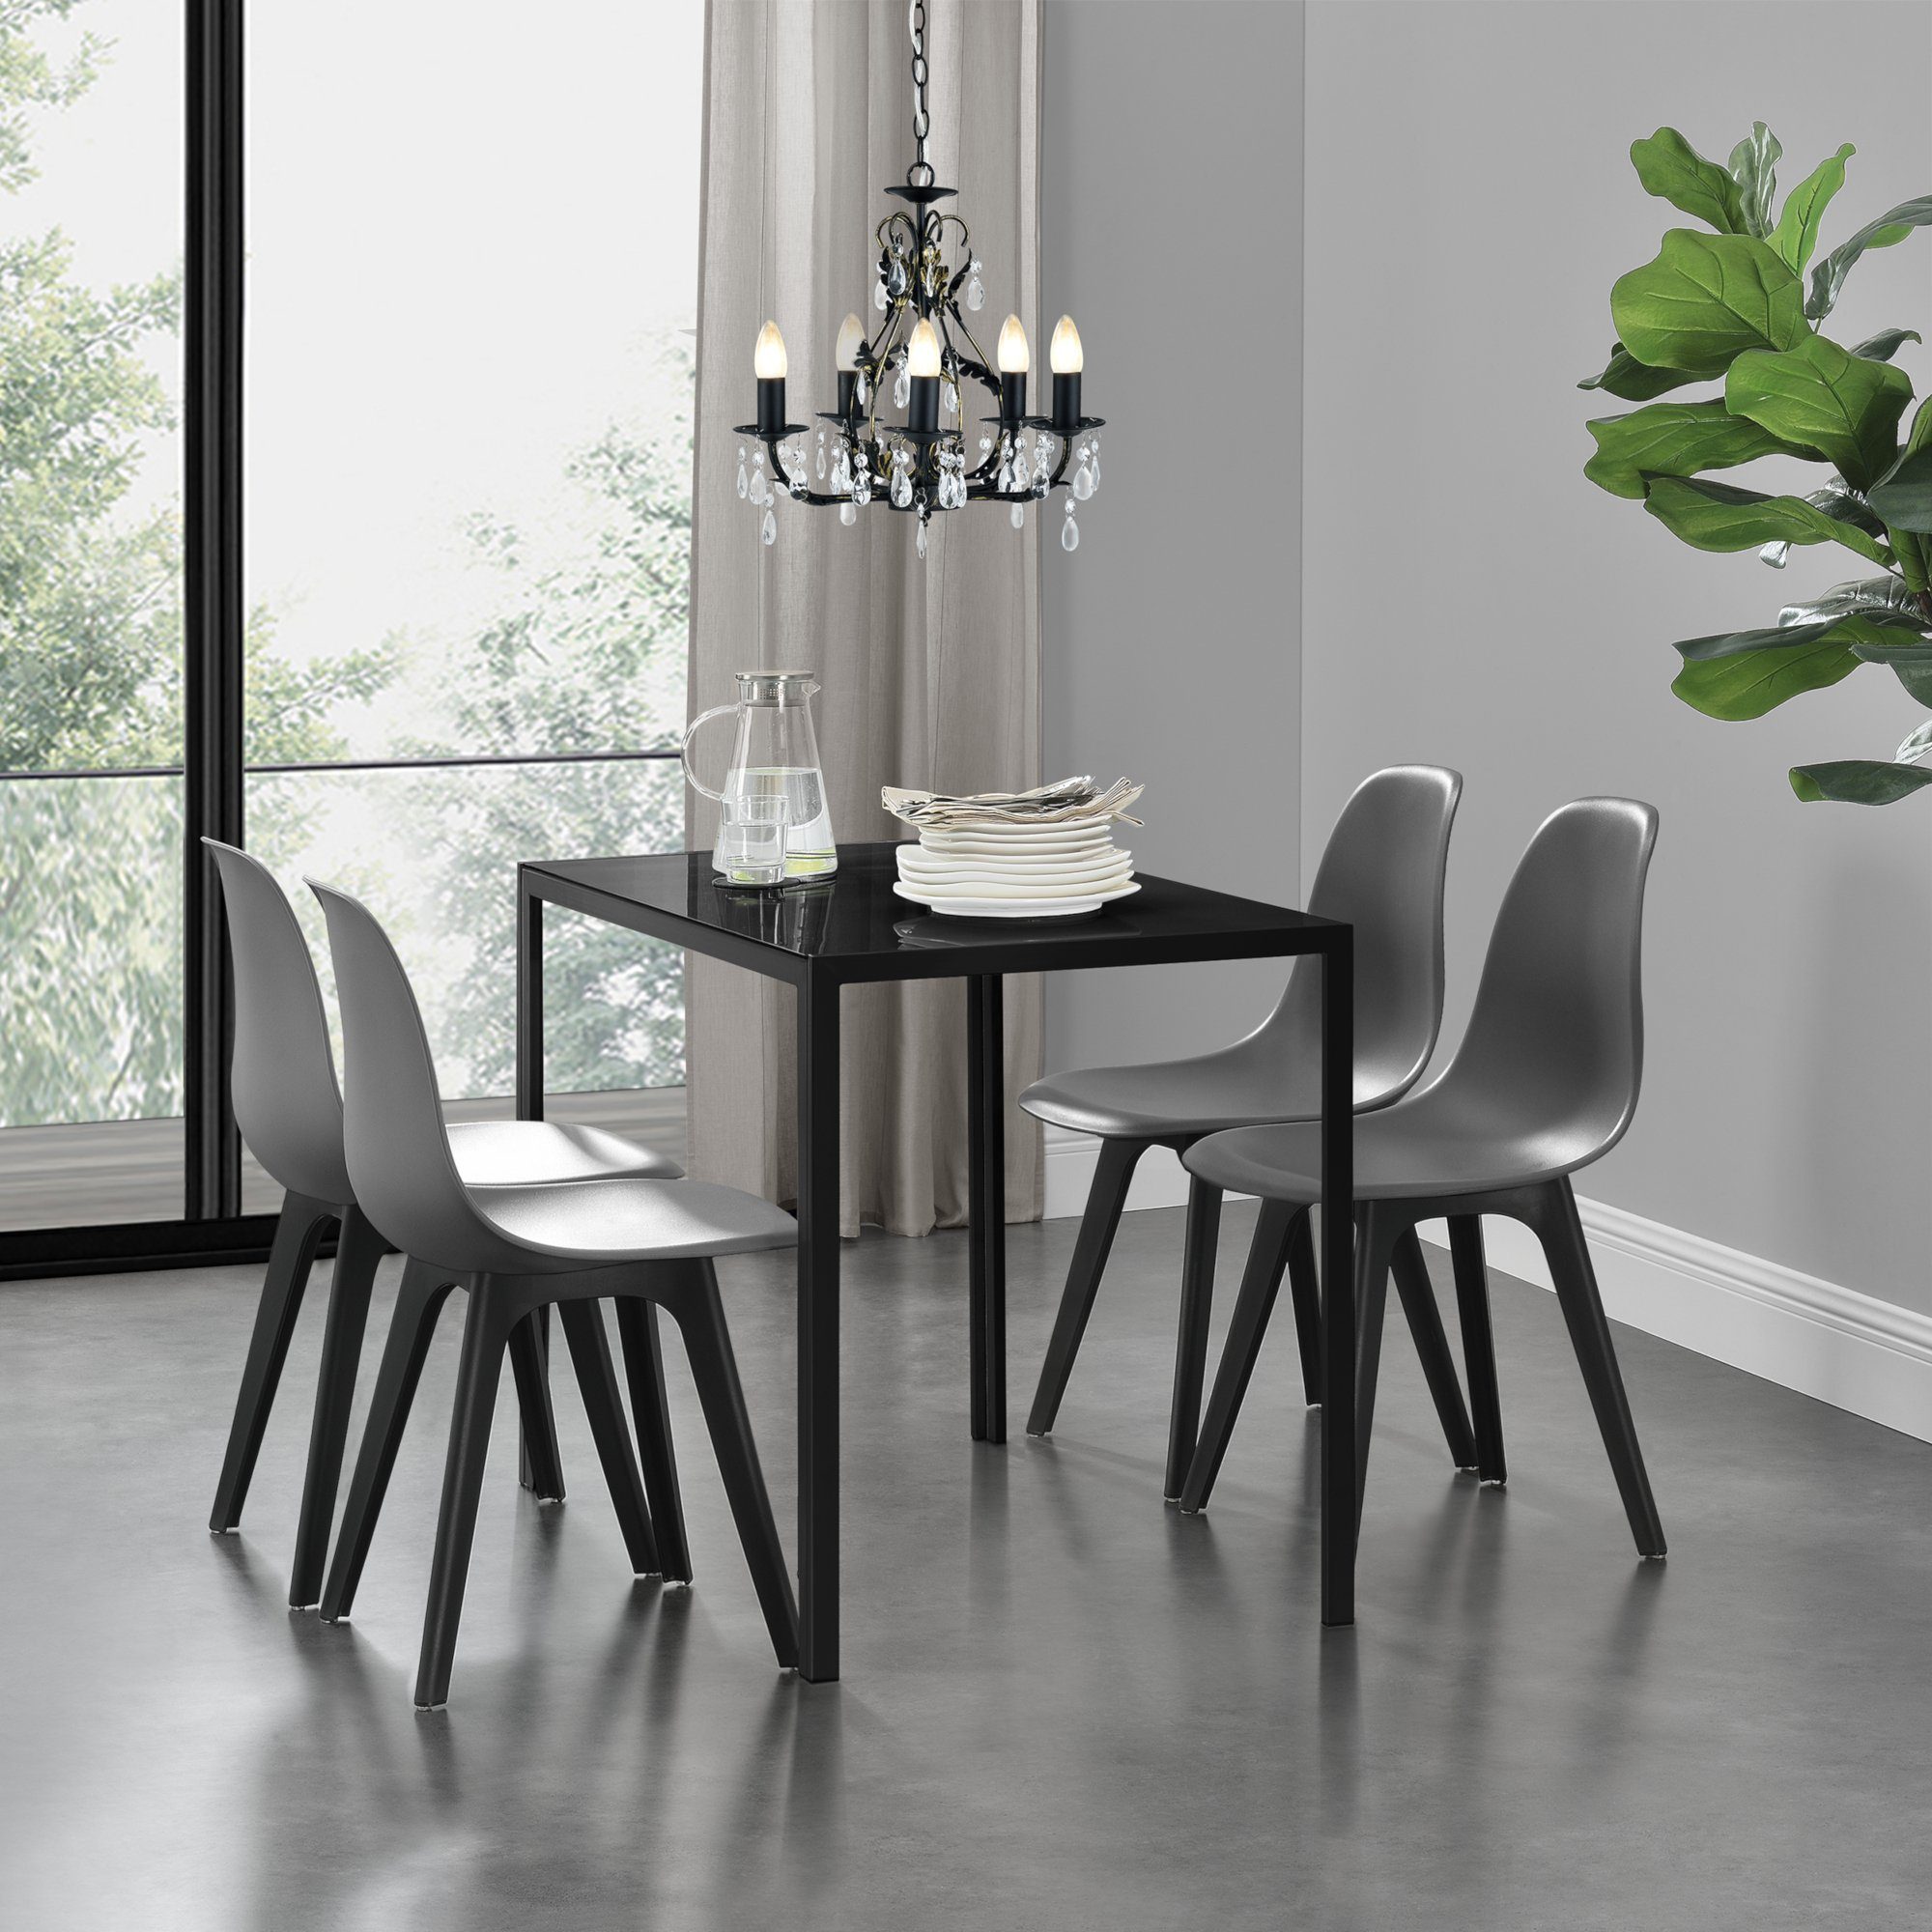 en.casa 120x70cm Esstisch grau mit 4 Stühlen weiß Essgruppe Tisch Stühle 